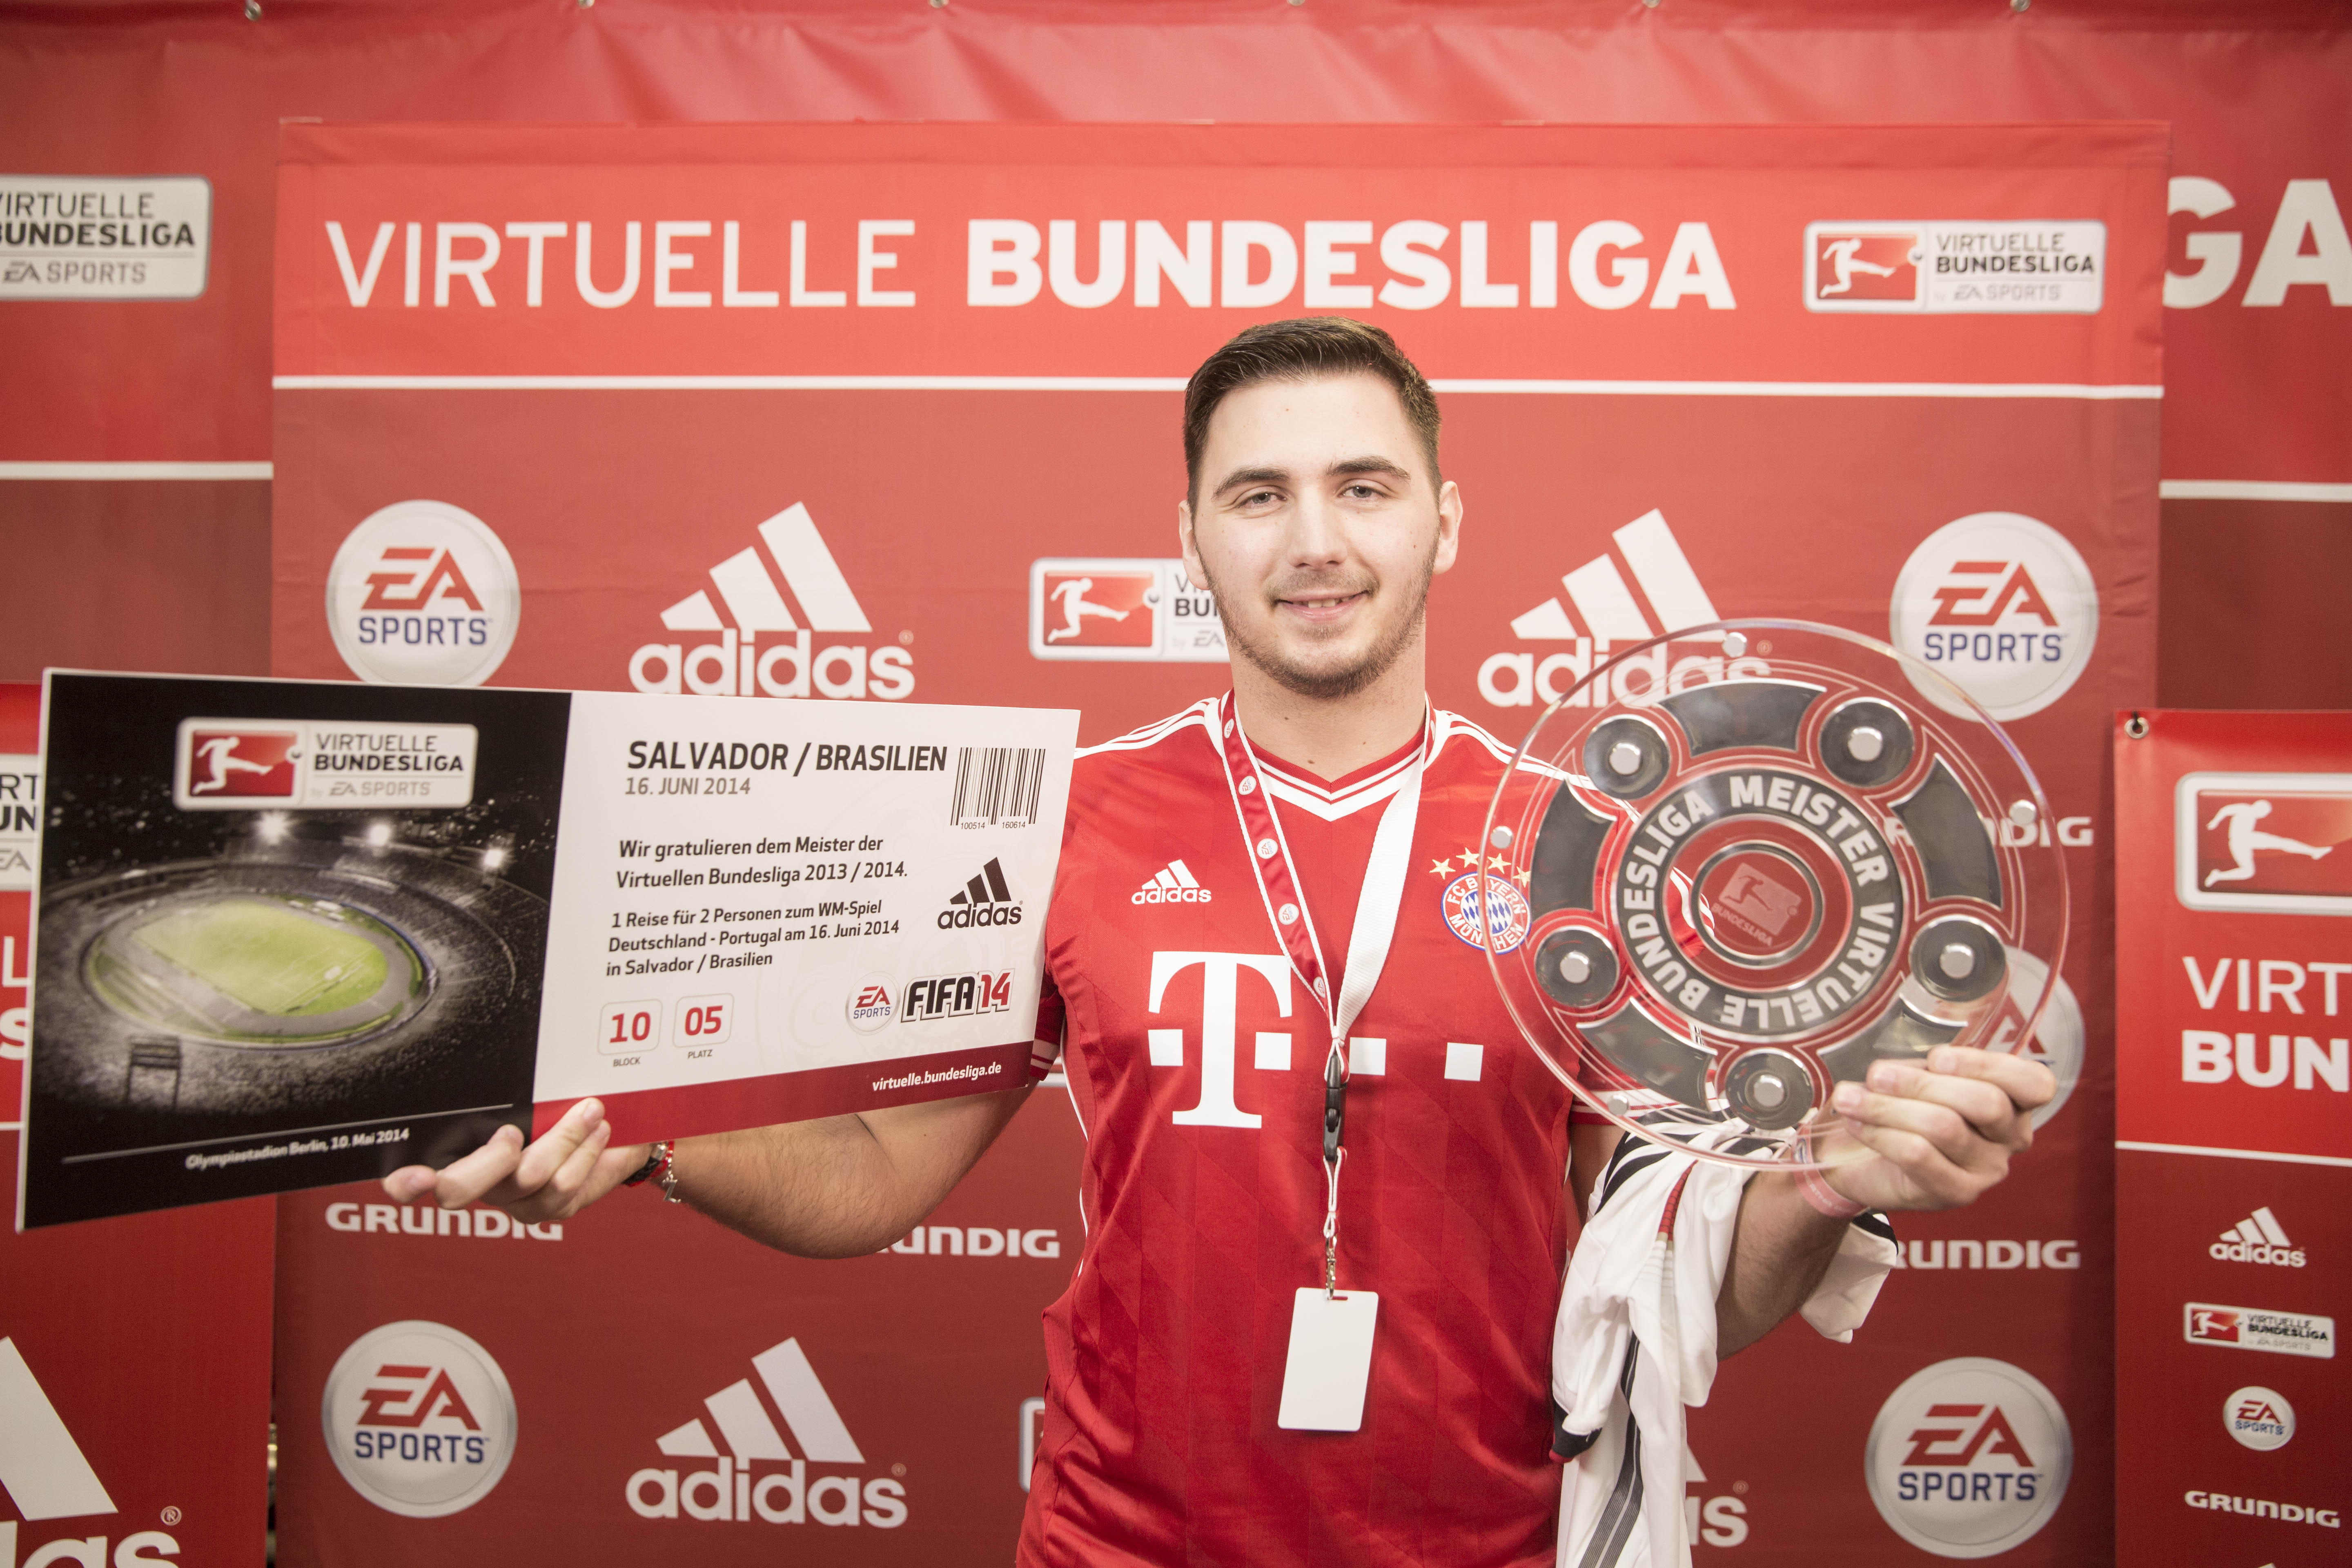 Virtuelle Bundesliga: 32 Spieler kämpfen in Hamburg um den deutschen Meistertitel